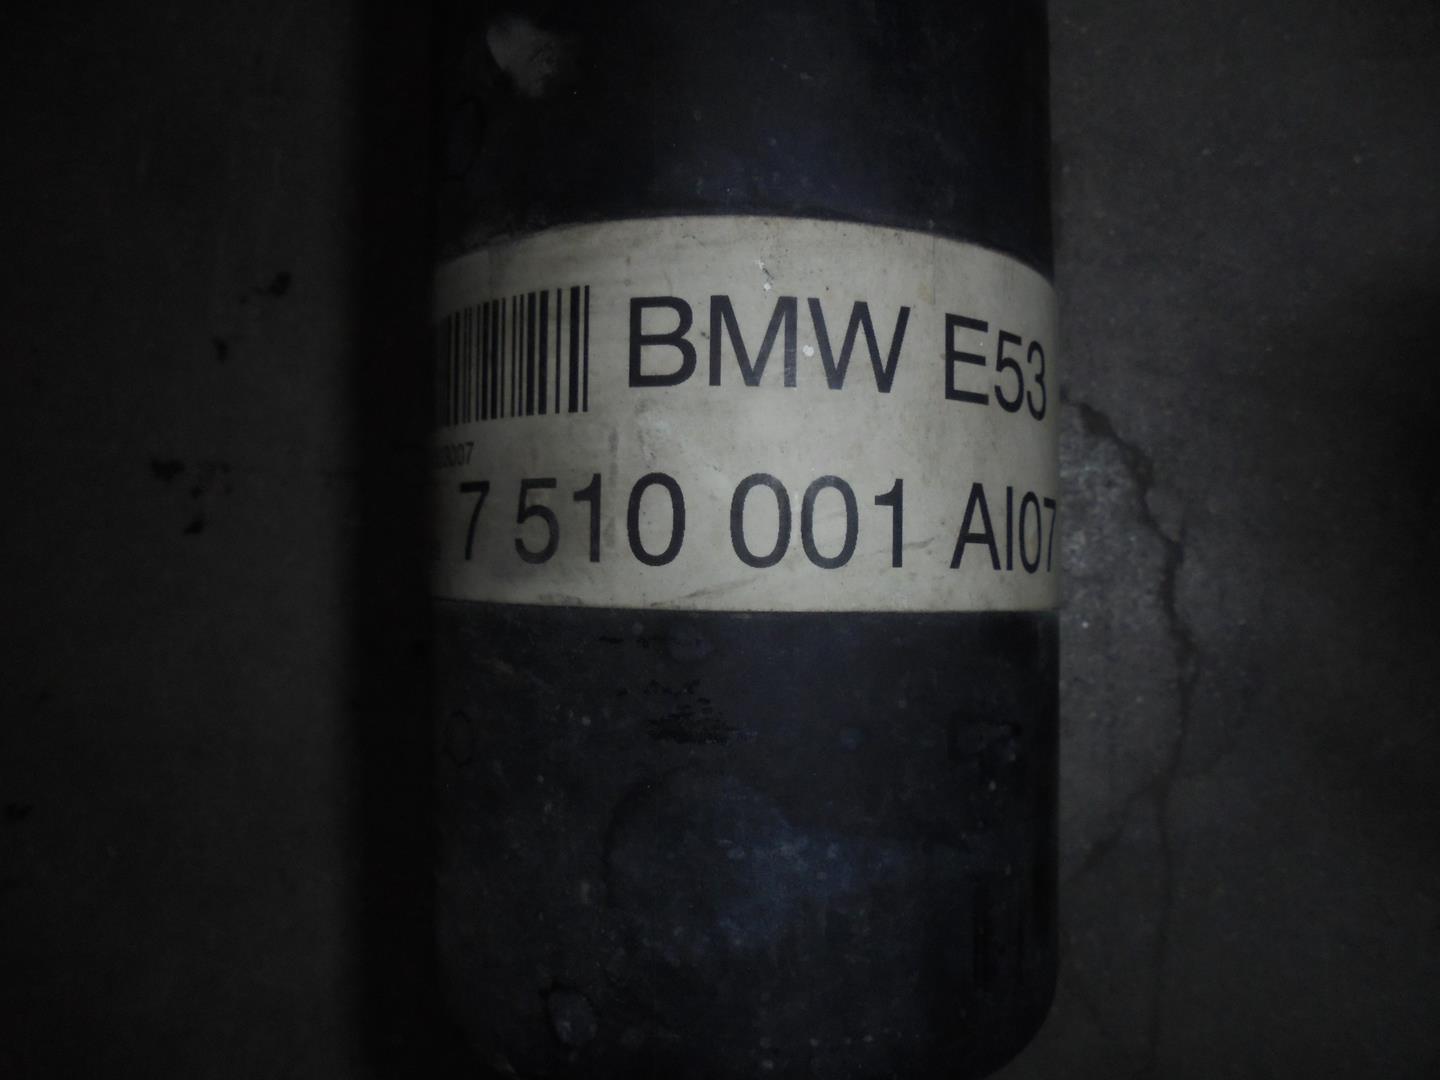 BMW X5 E53 (1999-2006) Gearbox Short Propshaft 7510001A107, BURRA3LADOB 19769938